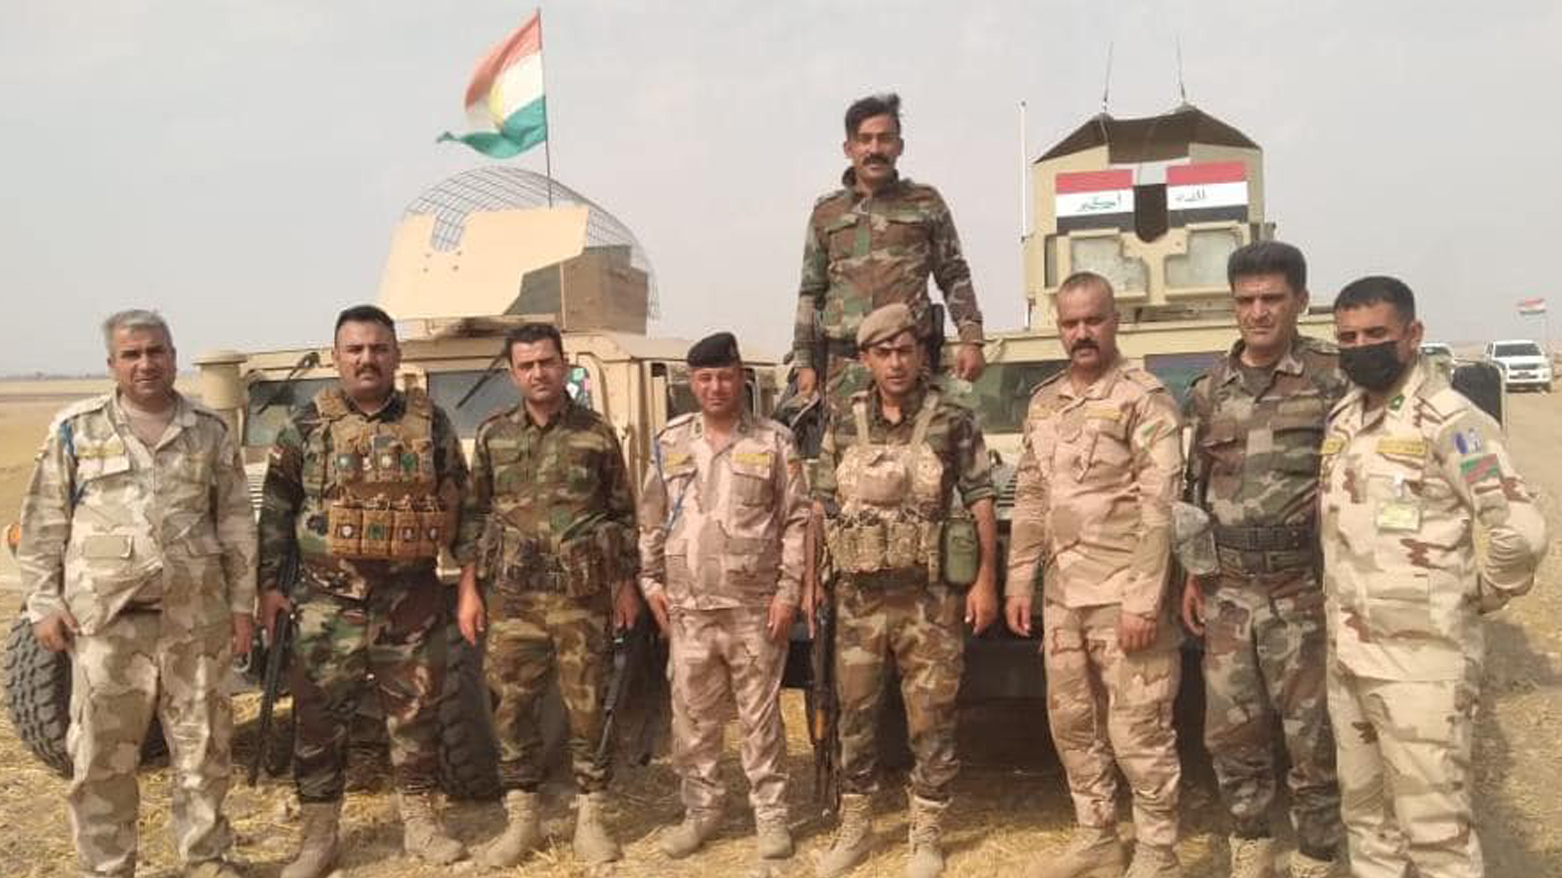 نیروهای پیشمرگ و ارتش عراق در هنگام انجام عـملیات مشترک - عکس: وزارت امور پیشمرگ